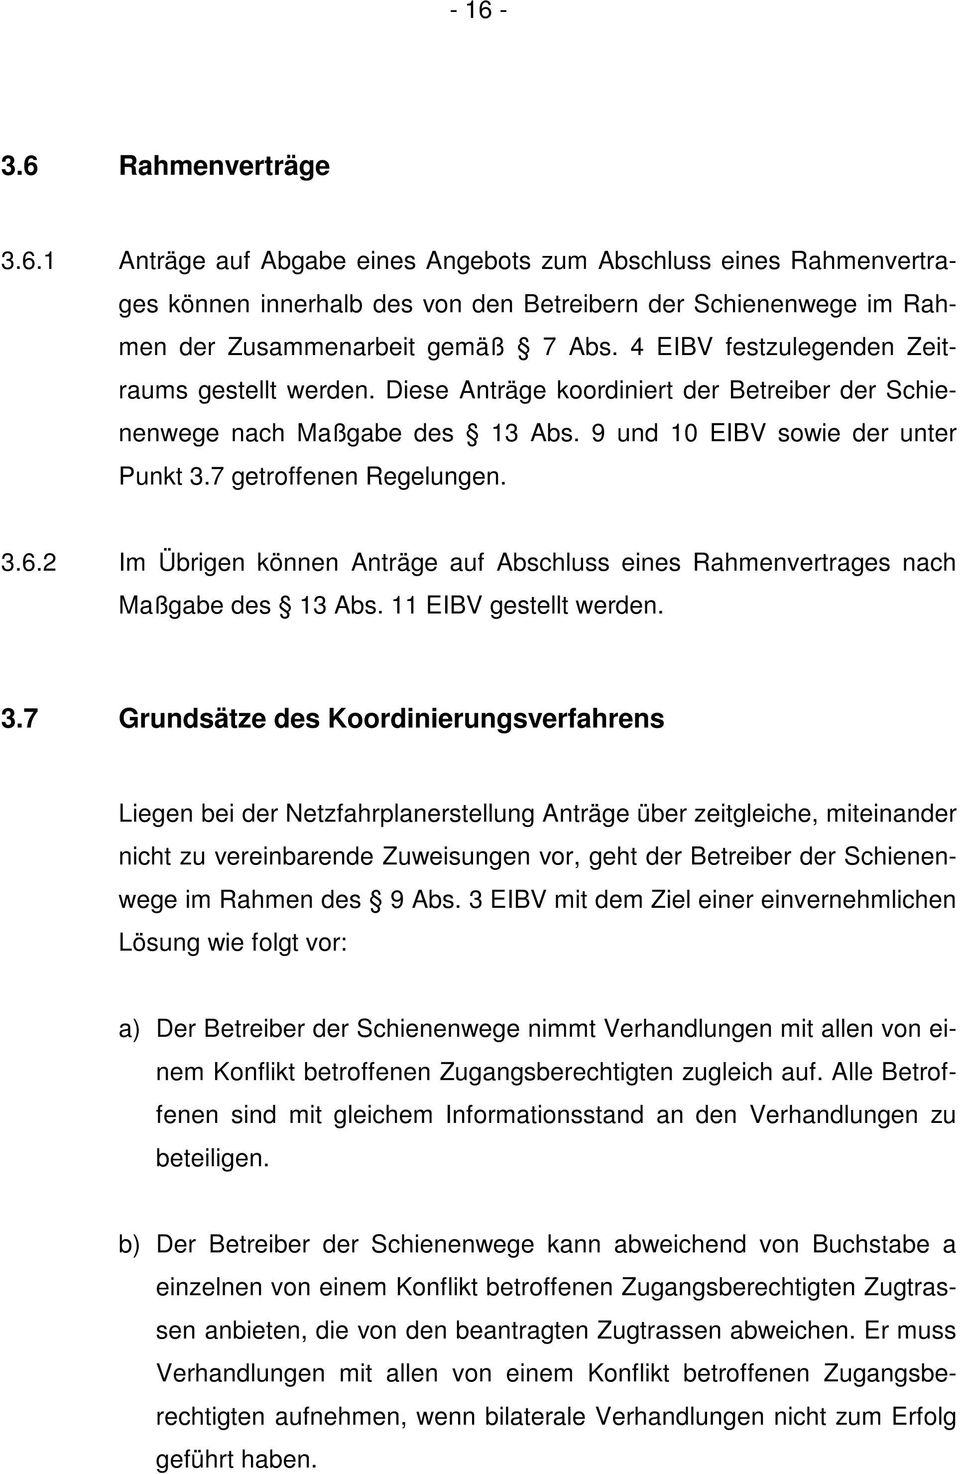 2 Im Übrigen können Anträge auf Abschluss eines Rahmenvertrages nach Maßgabe des 13 Abs. 11 EIBV gestellt werden. 3.